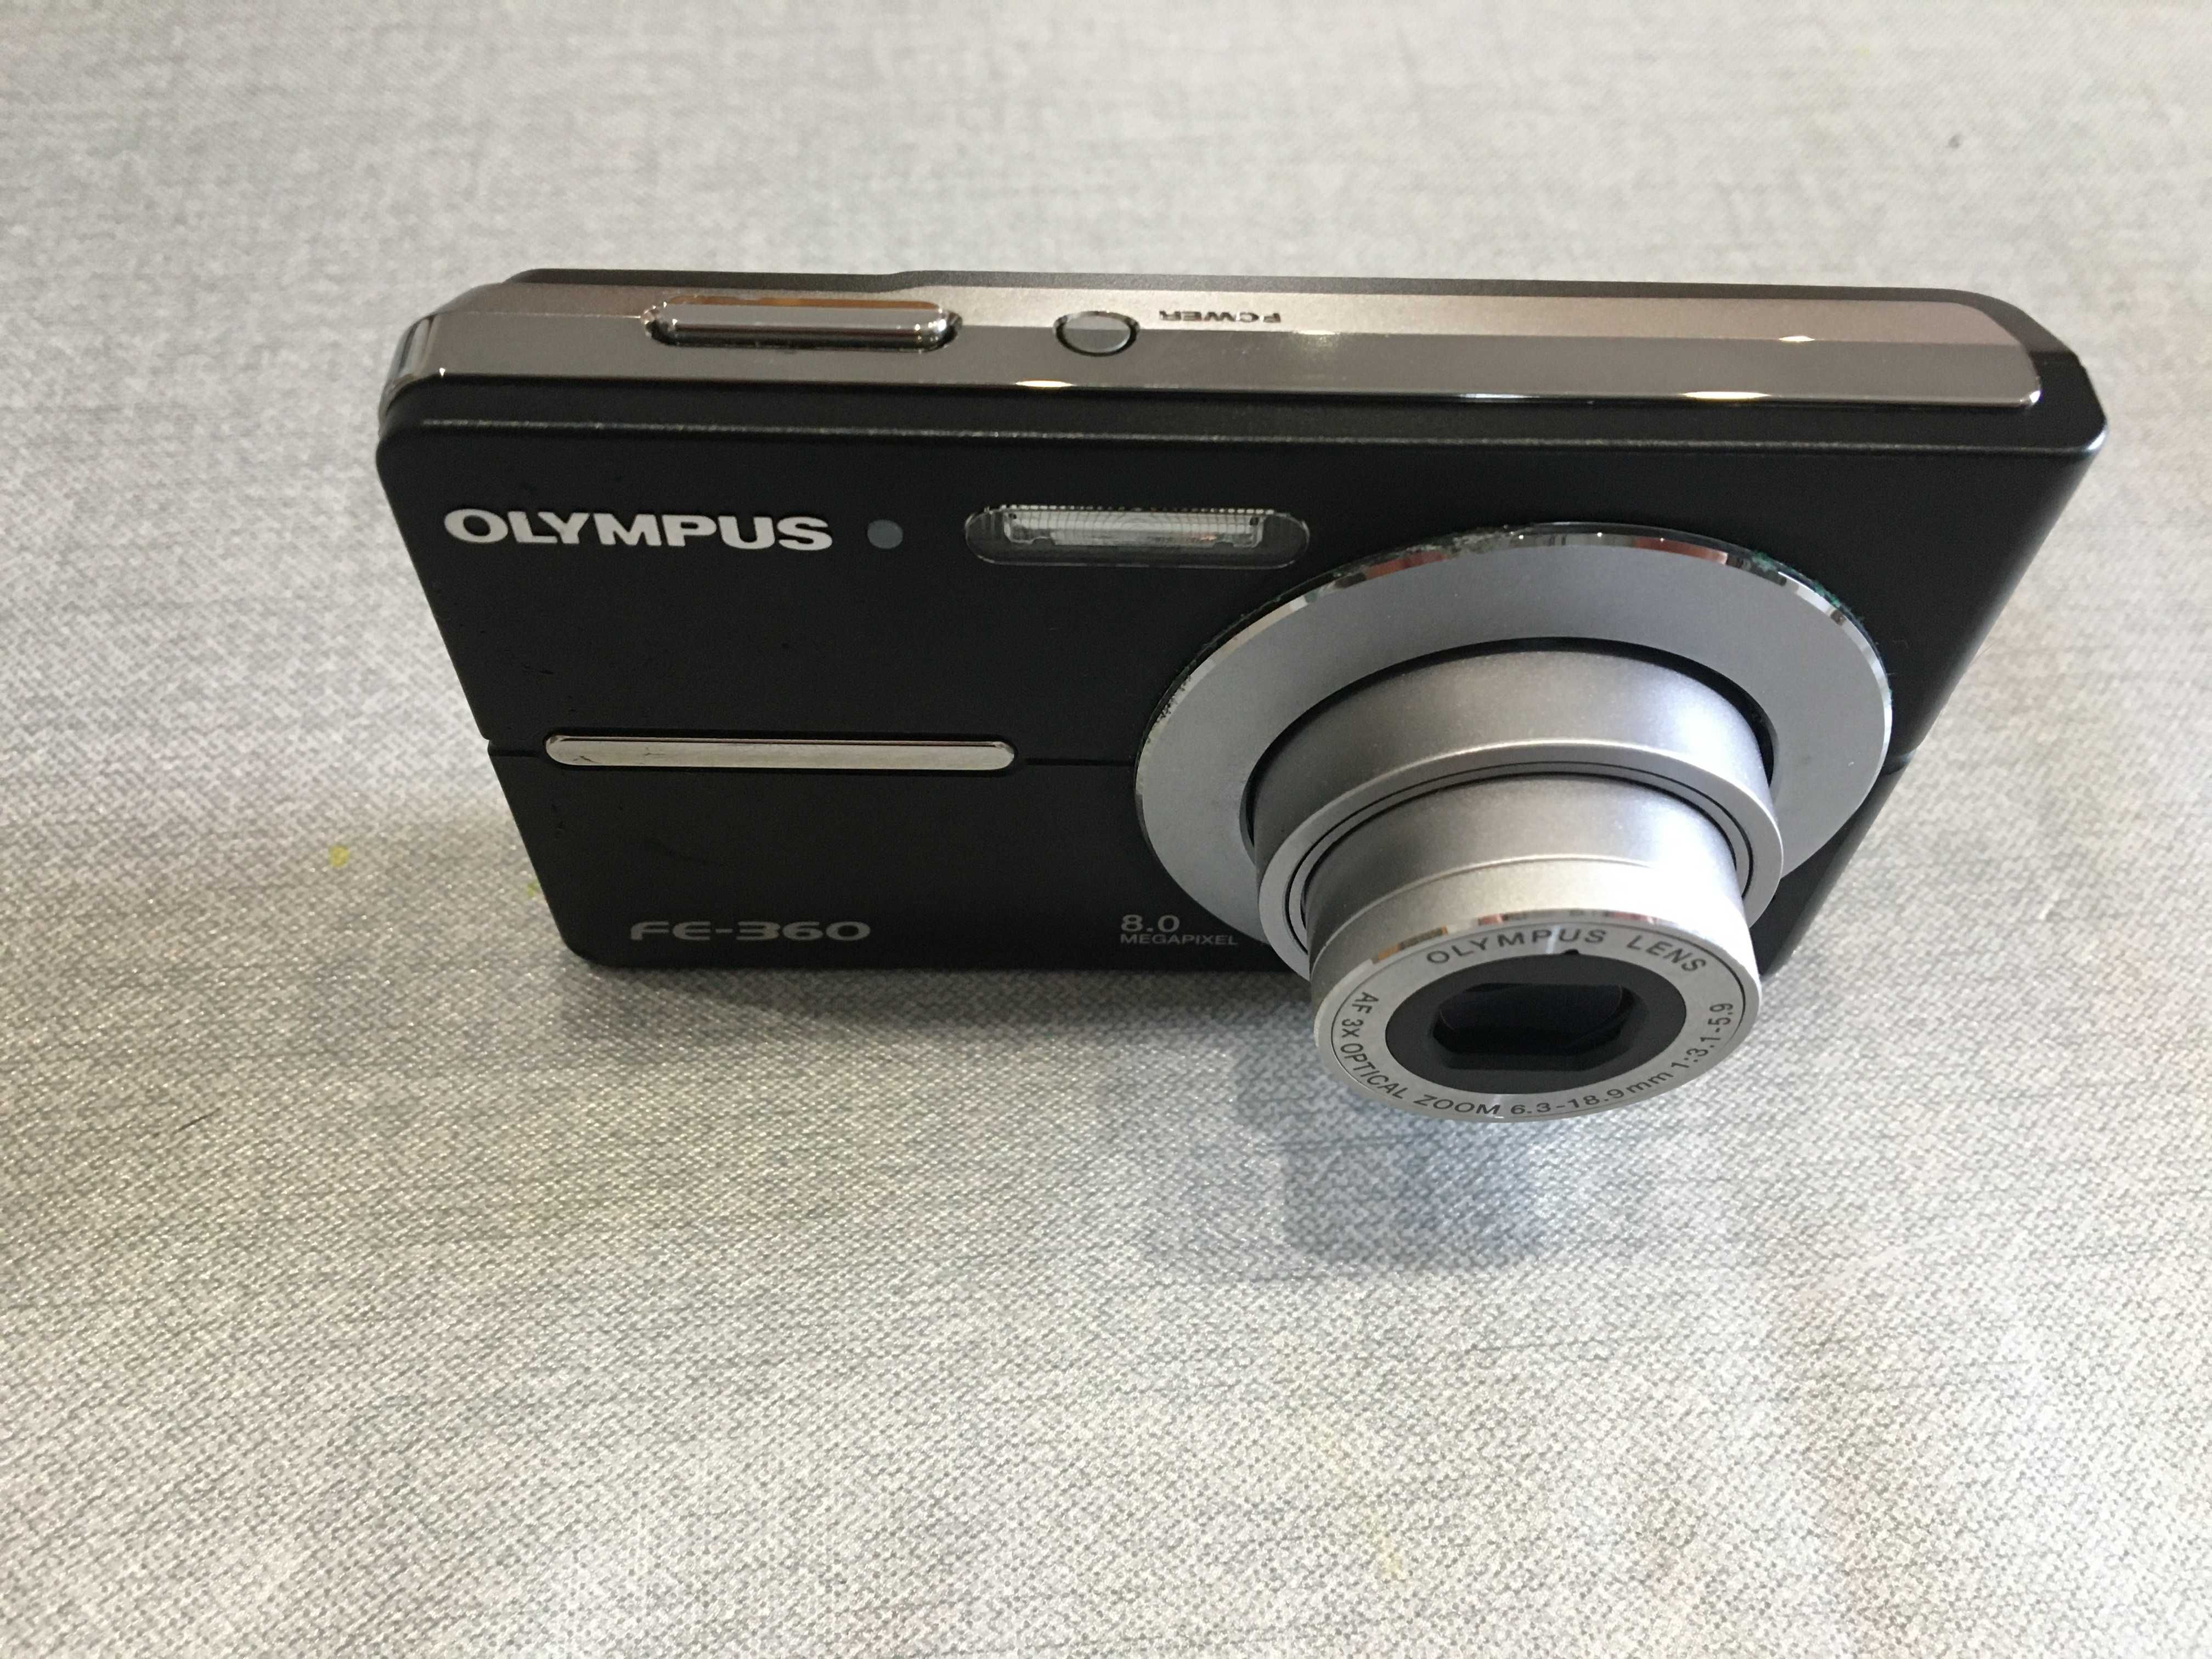 Máquina fotográfica Olympus FE-360 + bolsa de transporte + carregador